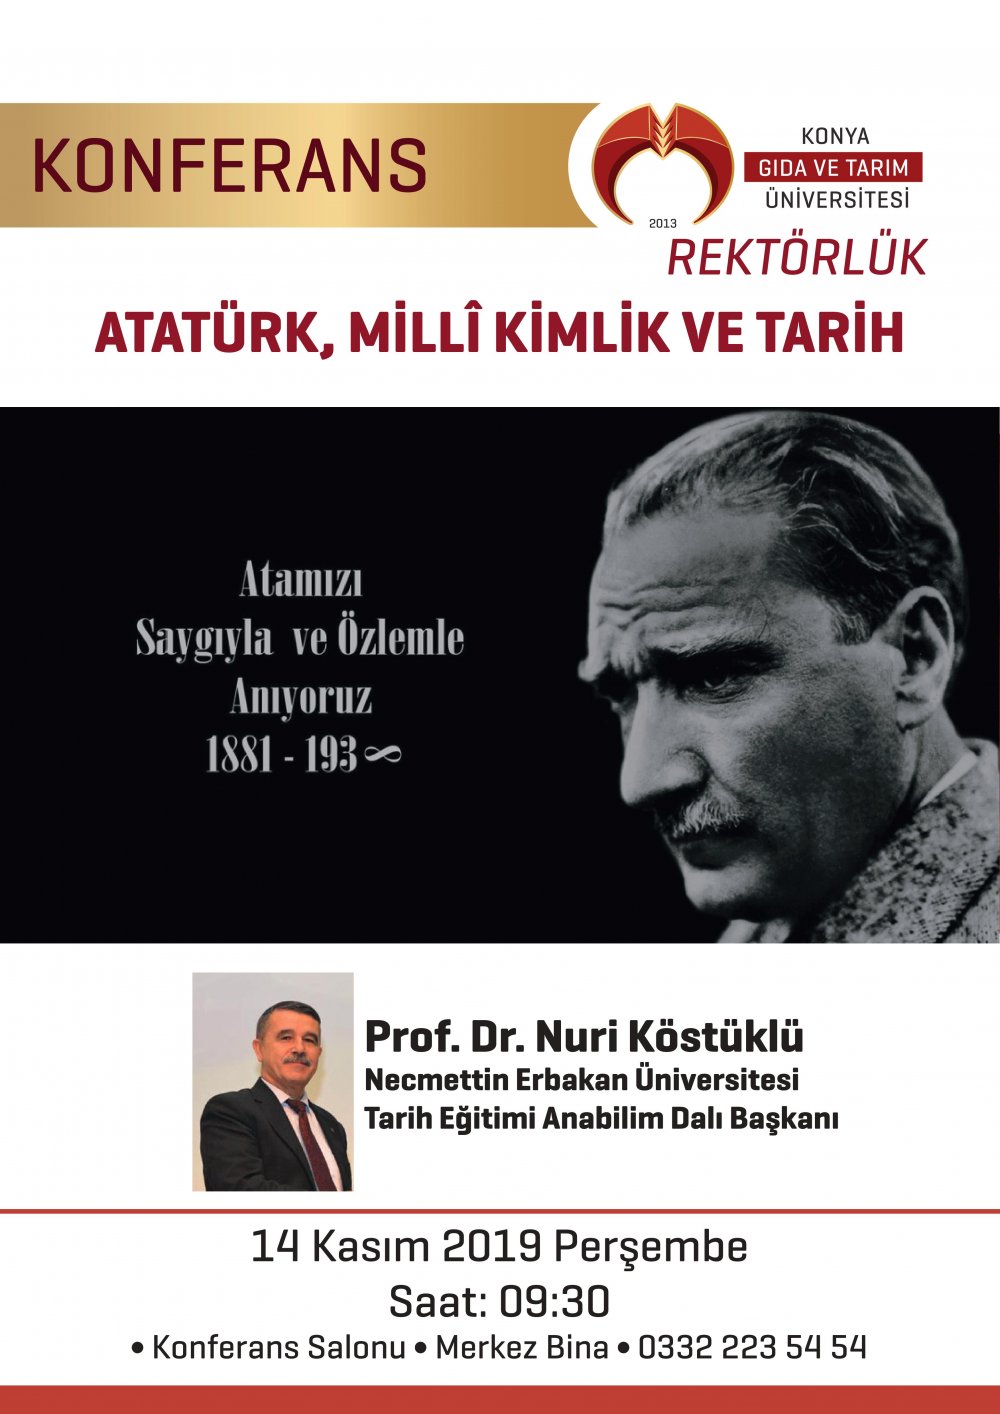 Konferans - Atatürk, Milli Kimlik ve Tarih / 14 Kasım 2019 Perşembe Saat 09:30